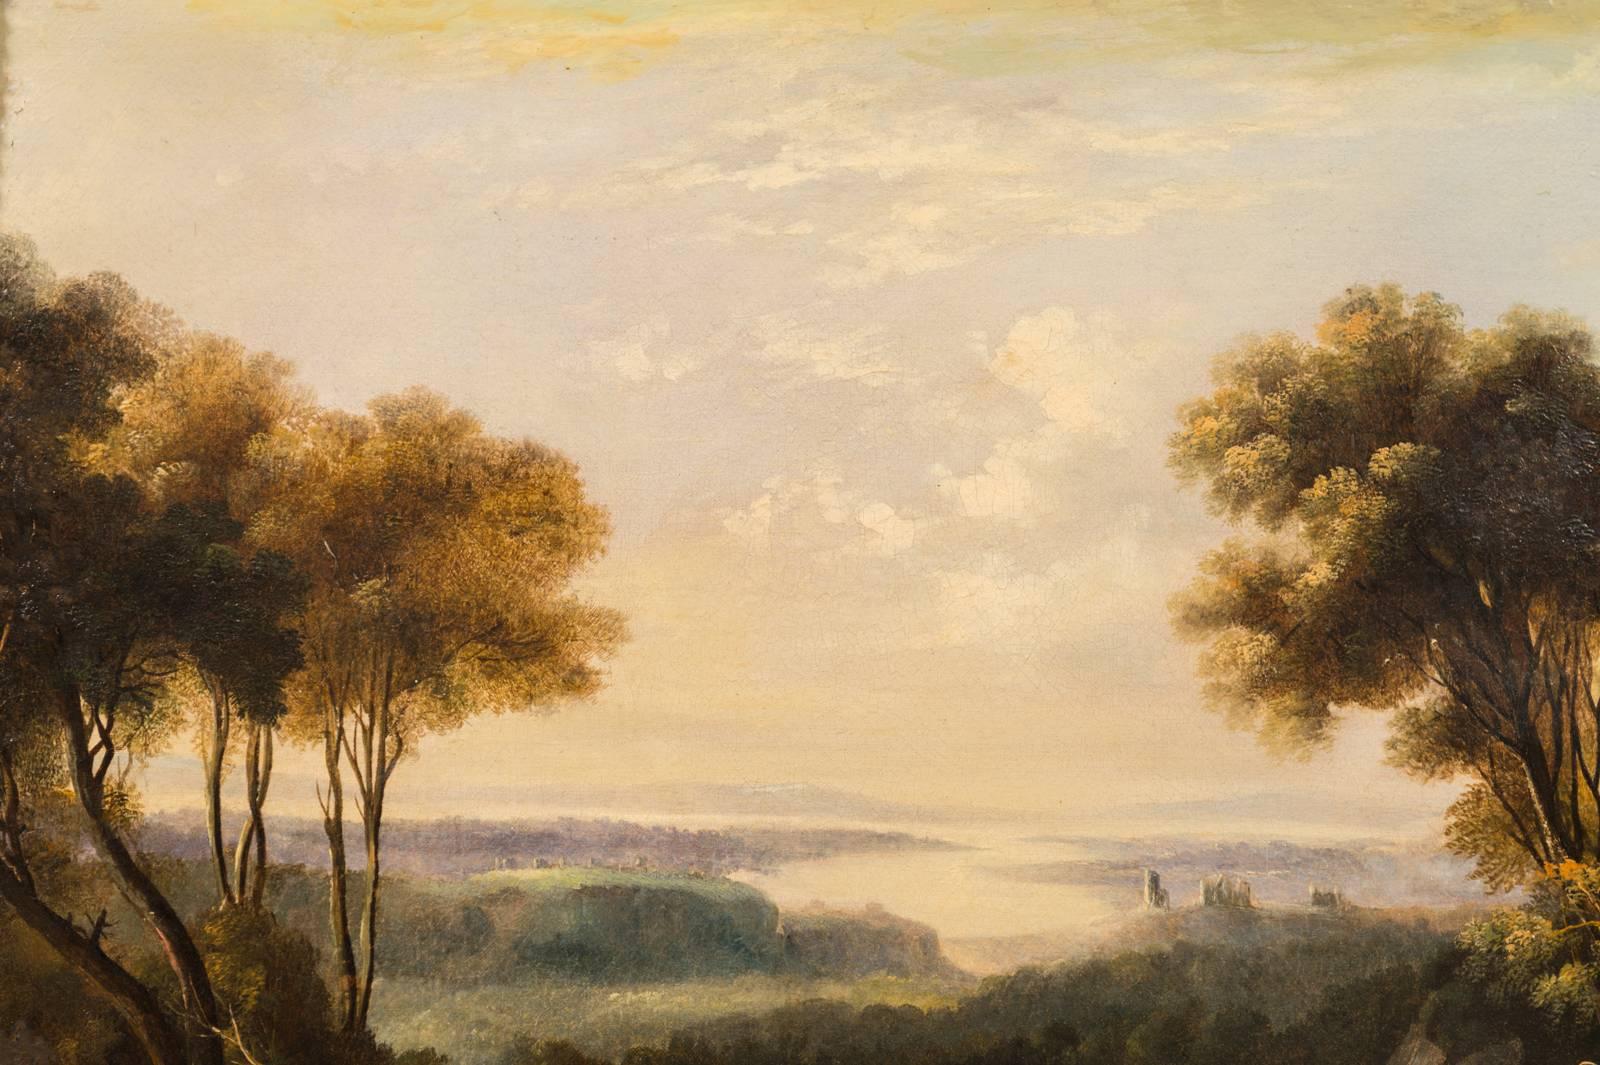 Fin du XVIIIe siècle Huile sur toile britannique d'Anthony Vandyke Copley Fielding, 1787-1855 en vente